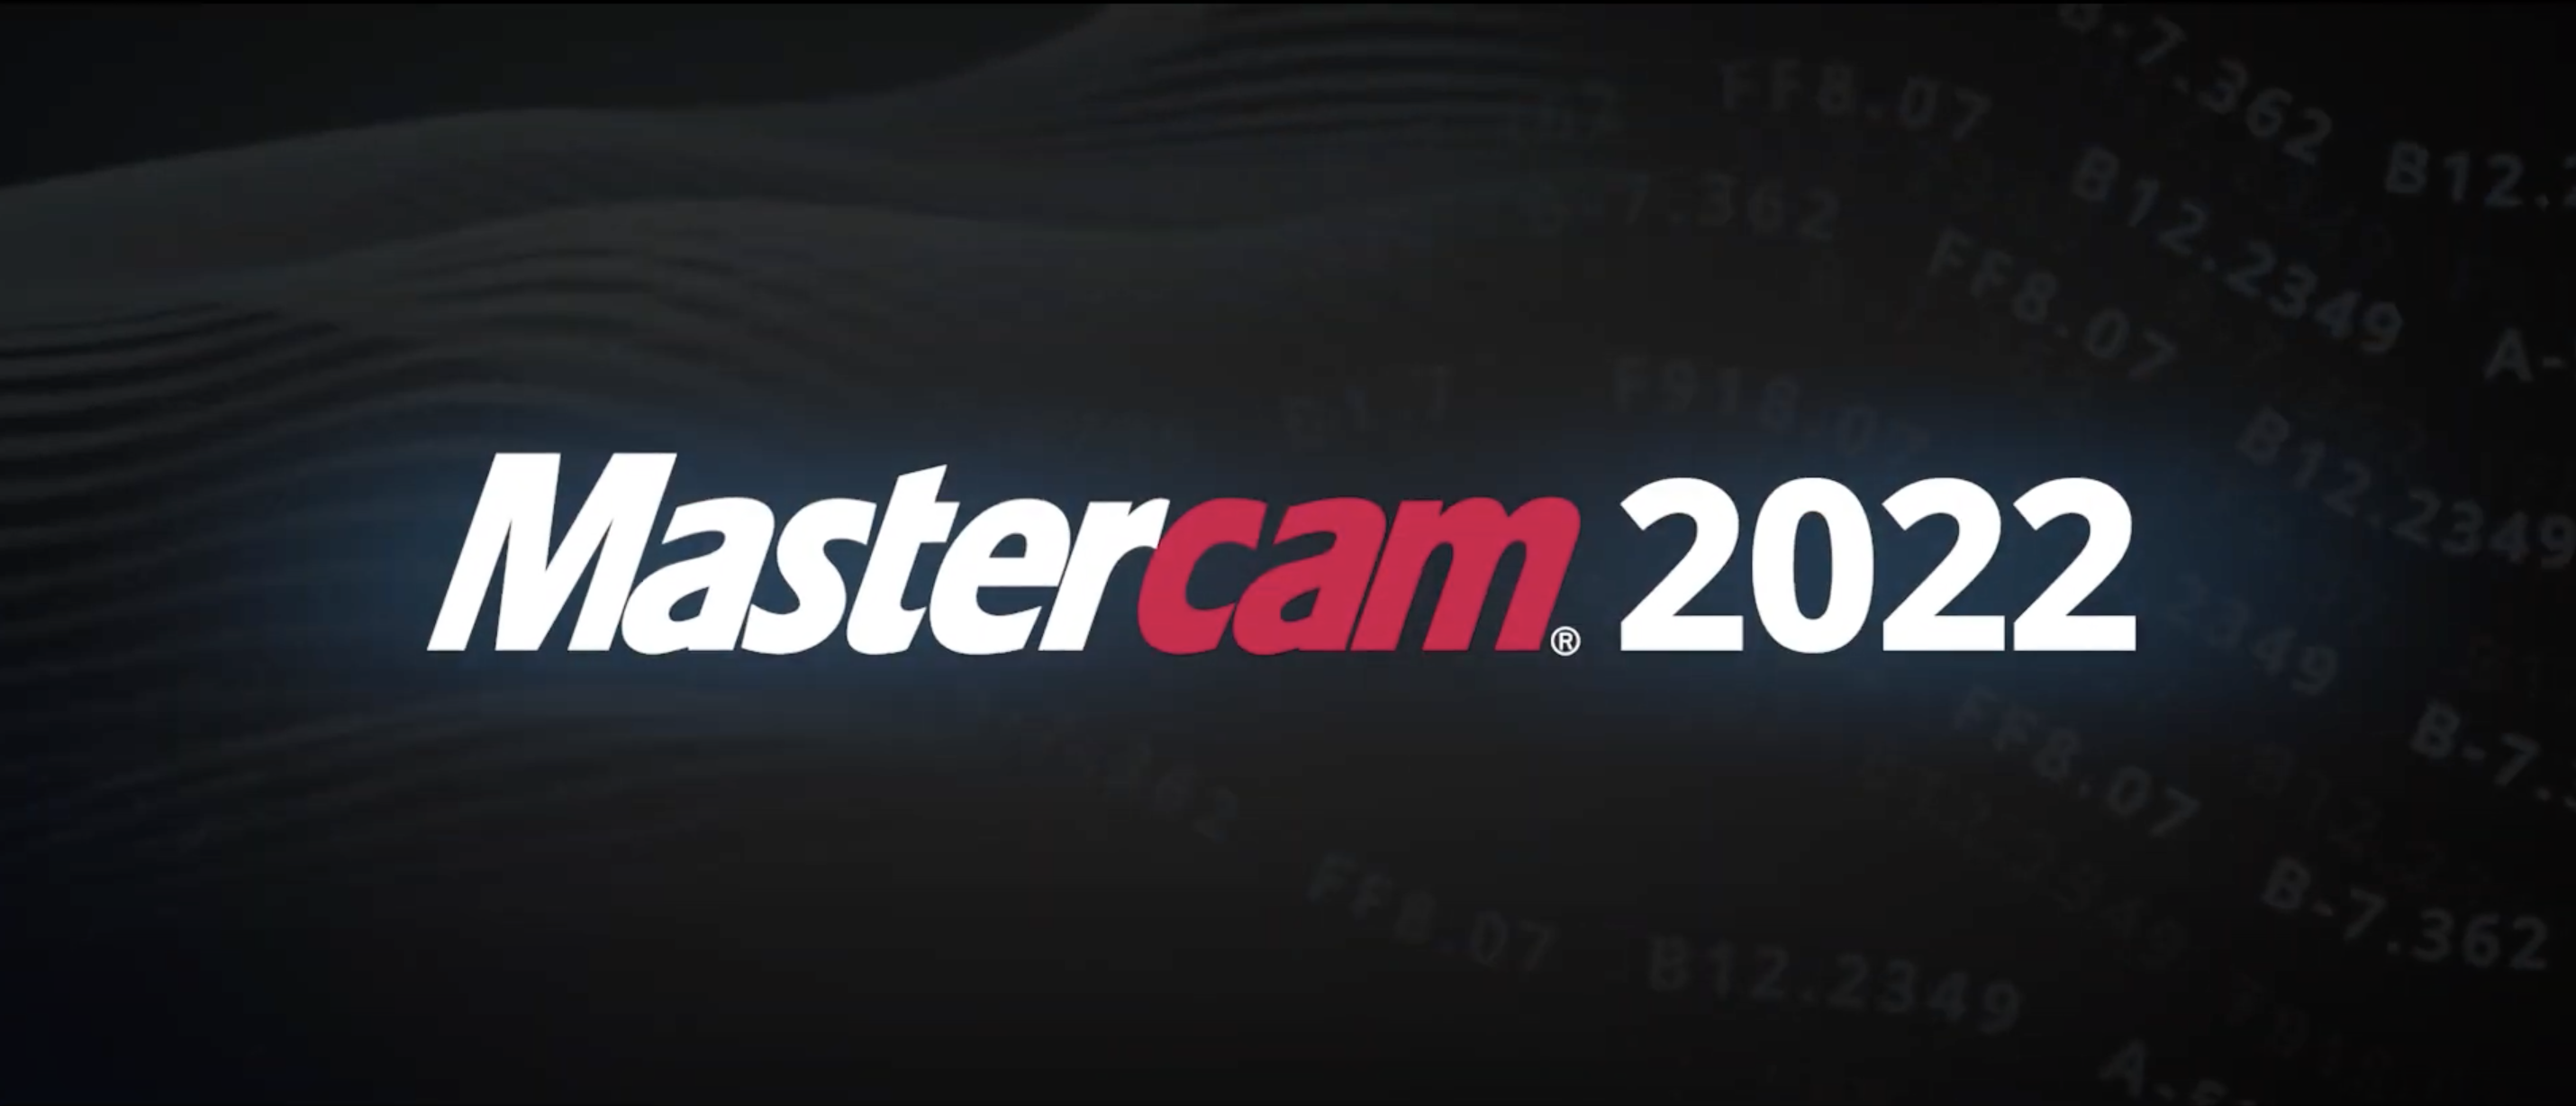 mastercam 2022